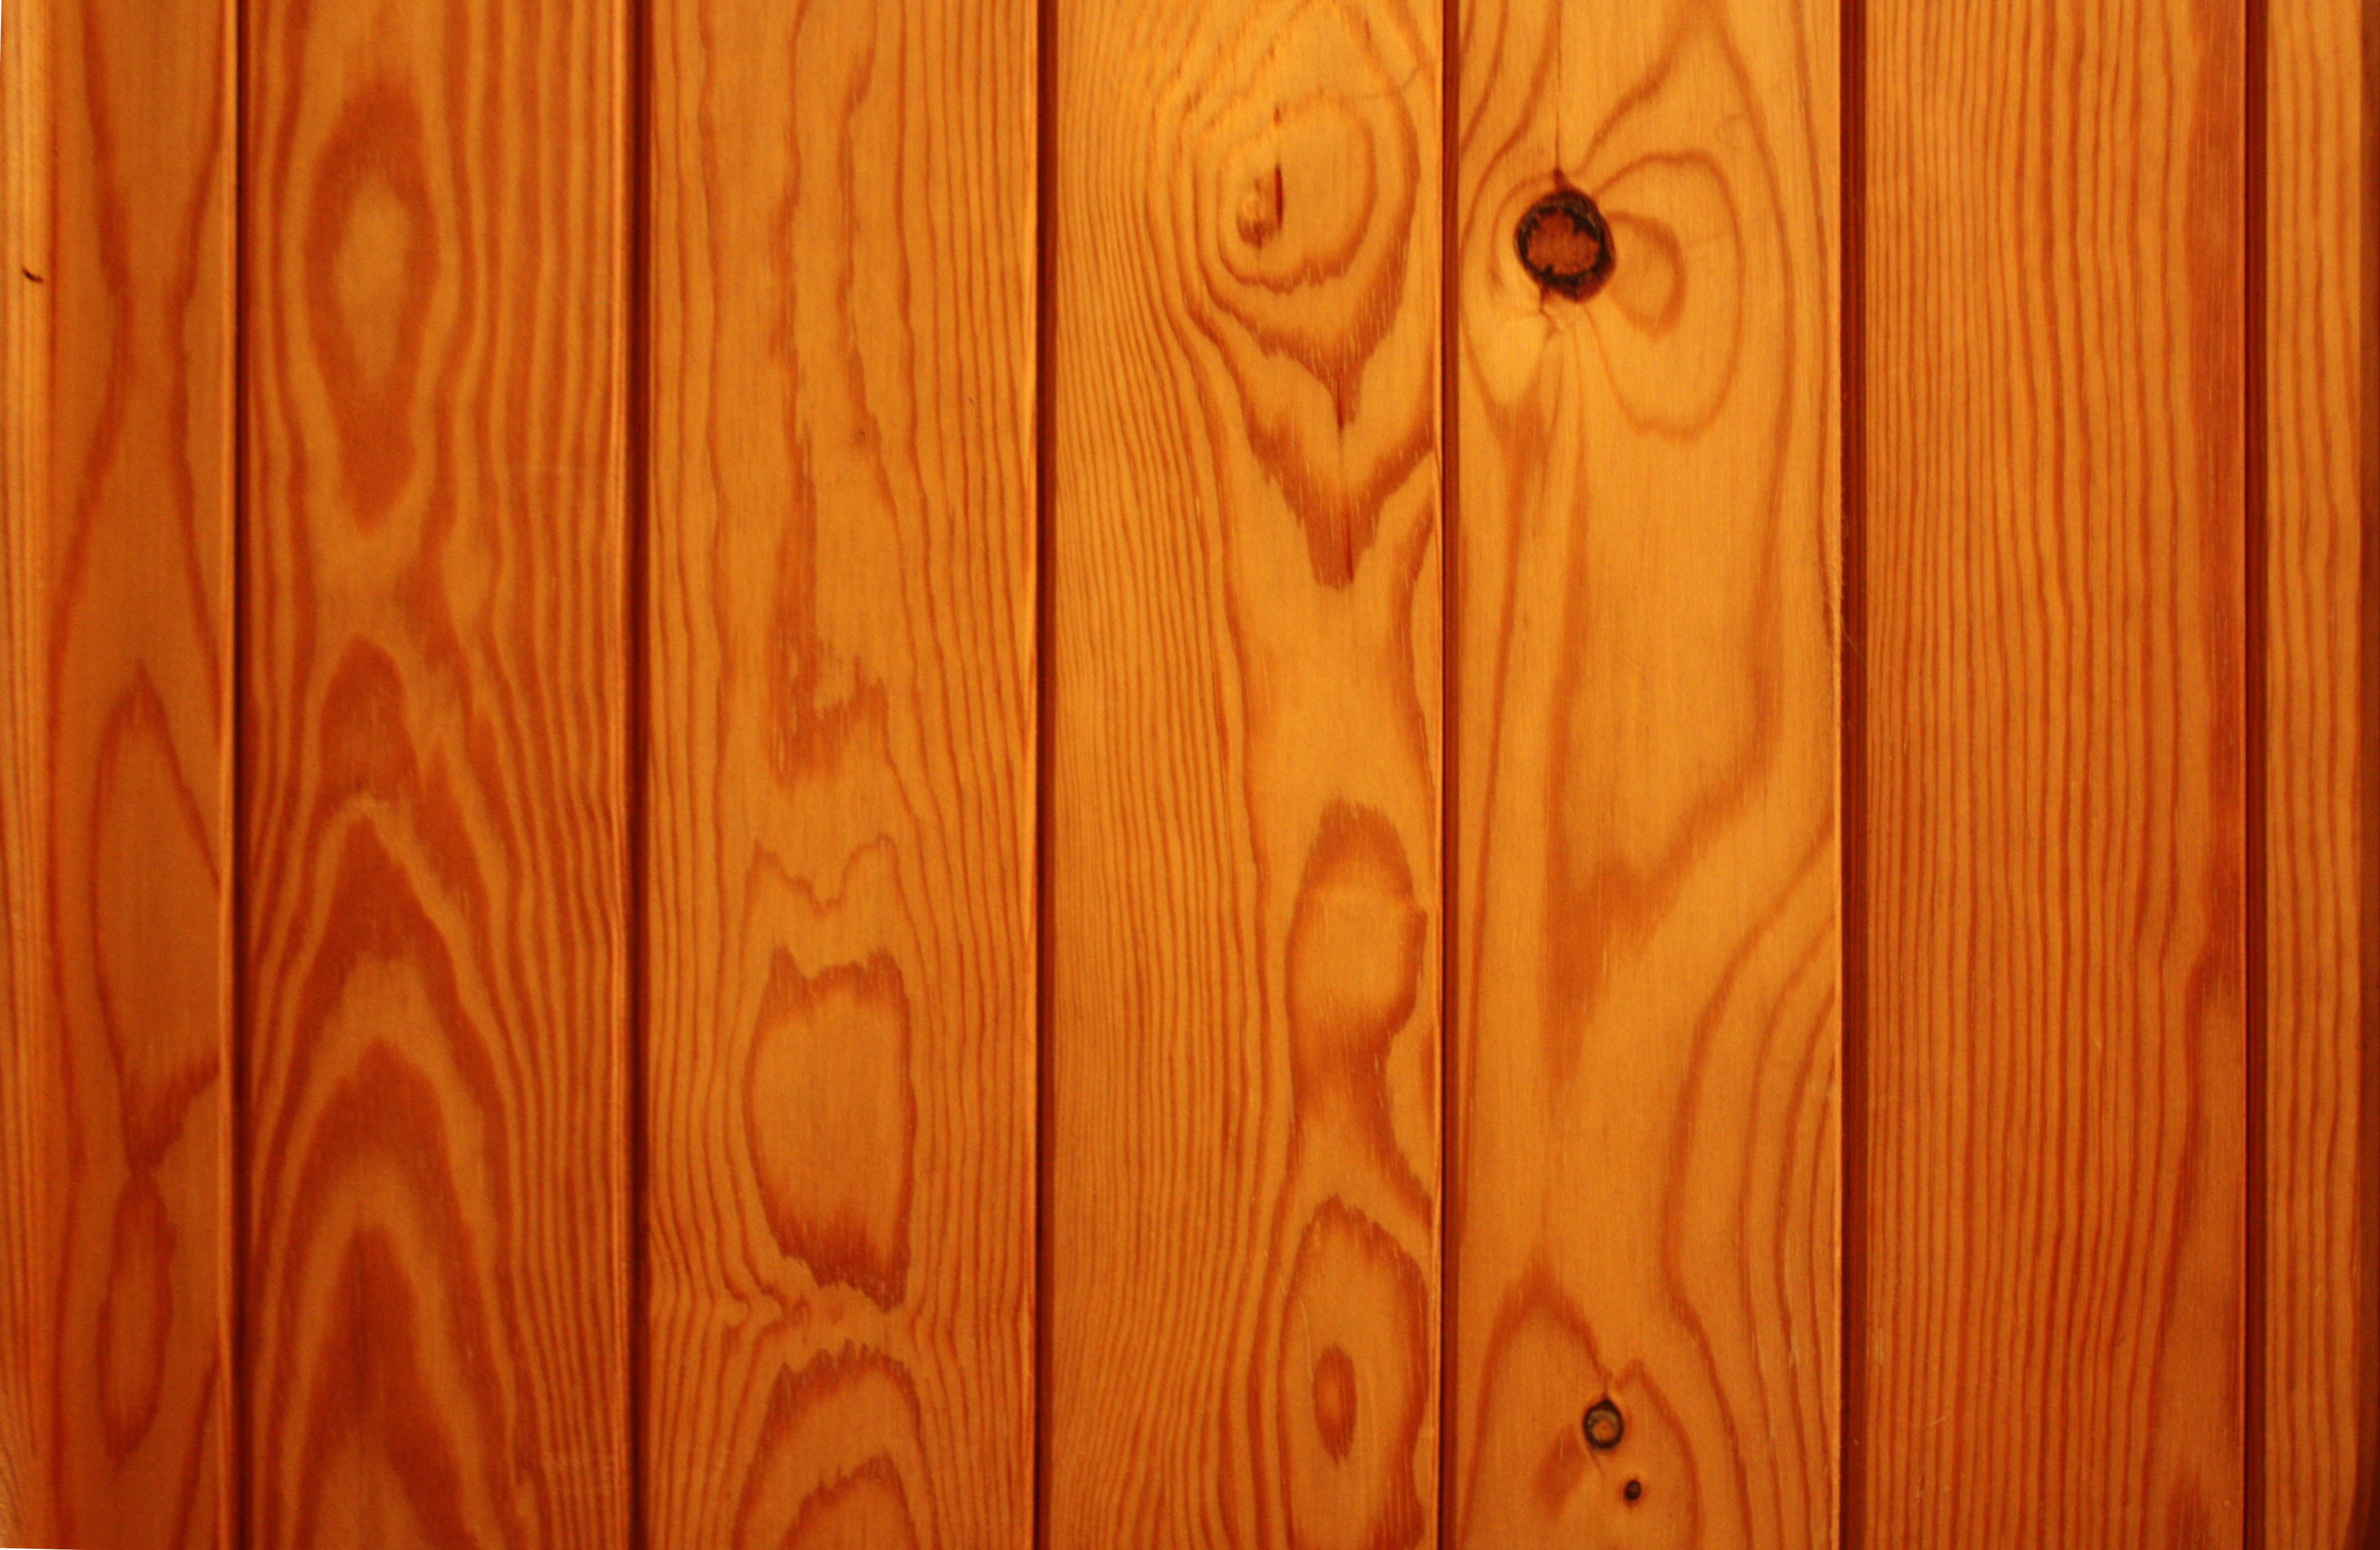 Nền gỗ vân vân đục, gỗ: Thiết kế của bạn mới chỉ thật sự hoàn hảo khi có sự góp mặt của chi tiết nền gỗ vân vân đục đặc. Hãy khám phá bộ sưu tập các hình ảnh này và cập nhật không gian làm việc của bạn với những mẫu nền gỗ tuyệt đẹp.